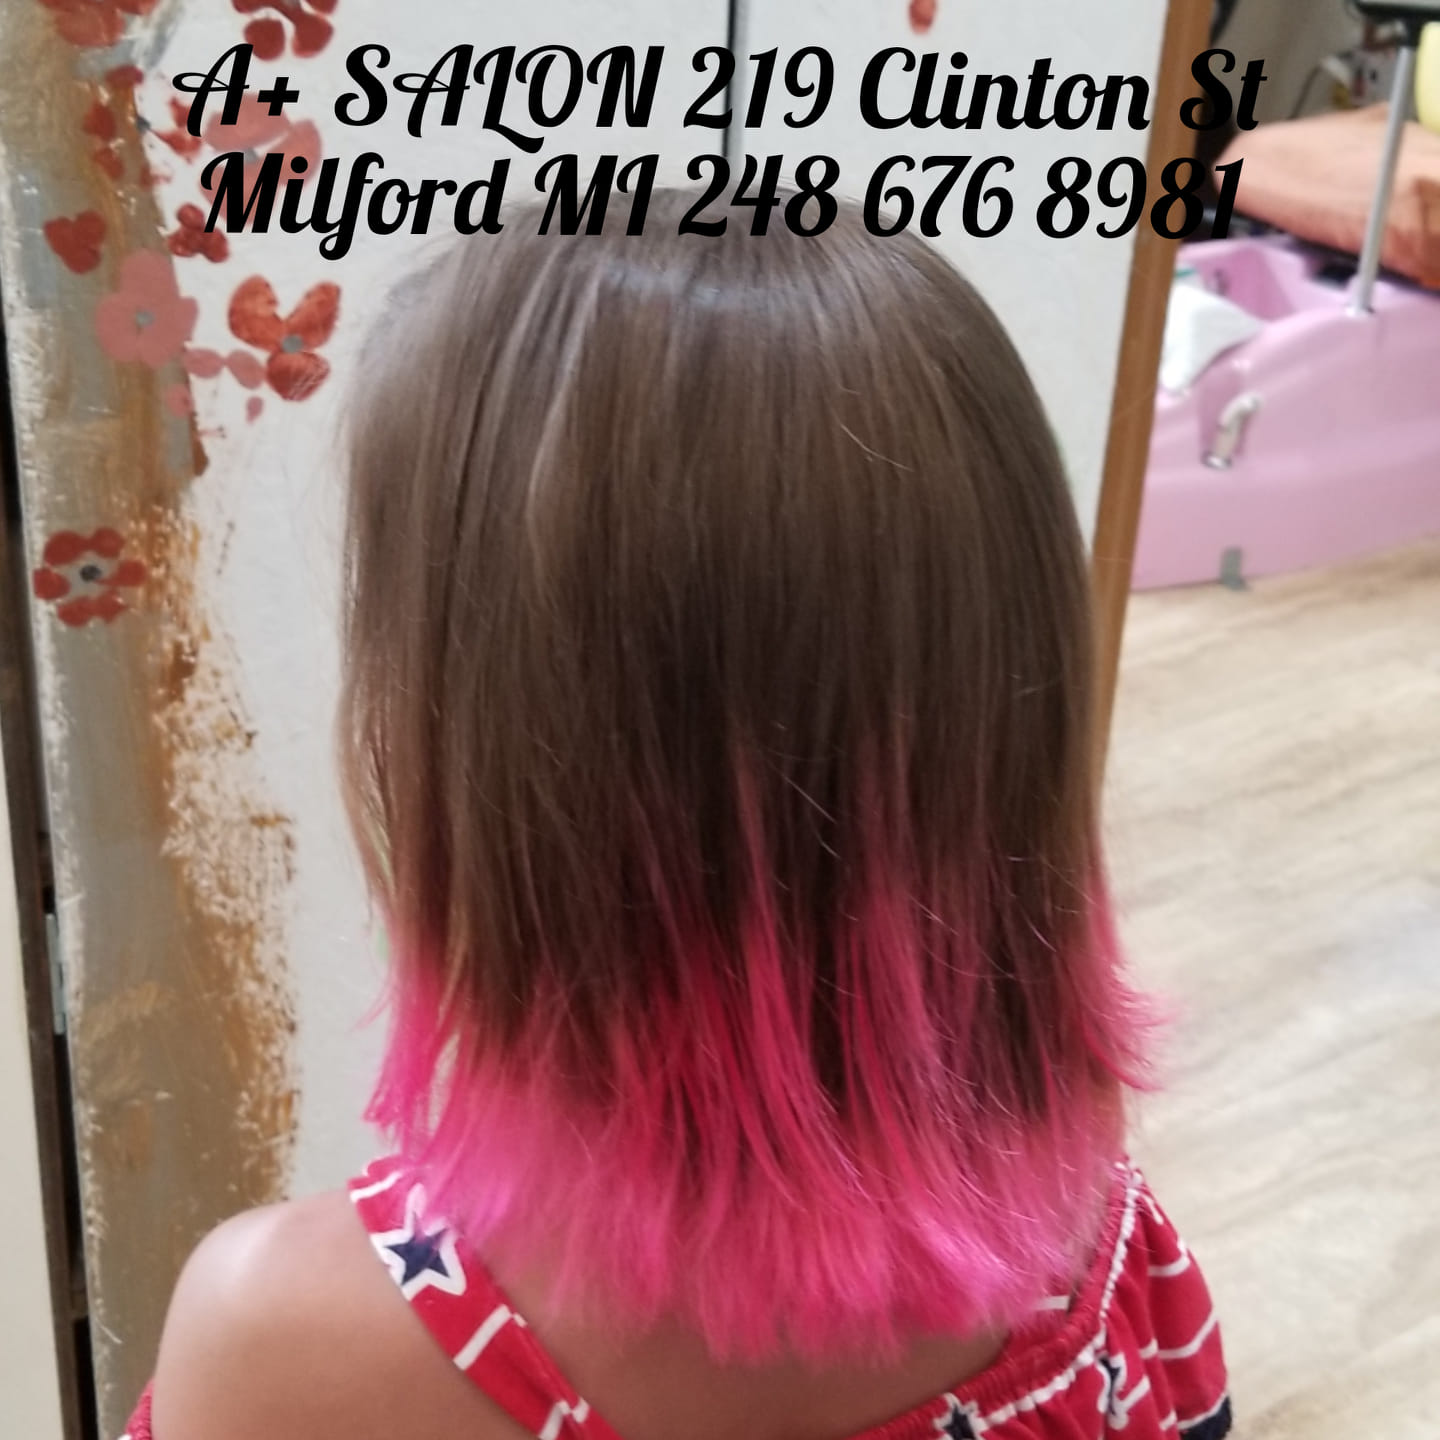 A+Salon, Nails, Hair & Aesthetics 219 Clinton St, Milford Michigan 48381